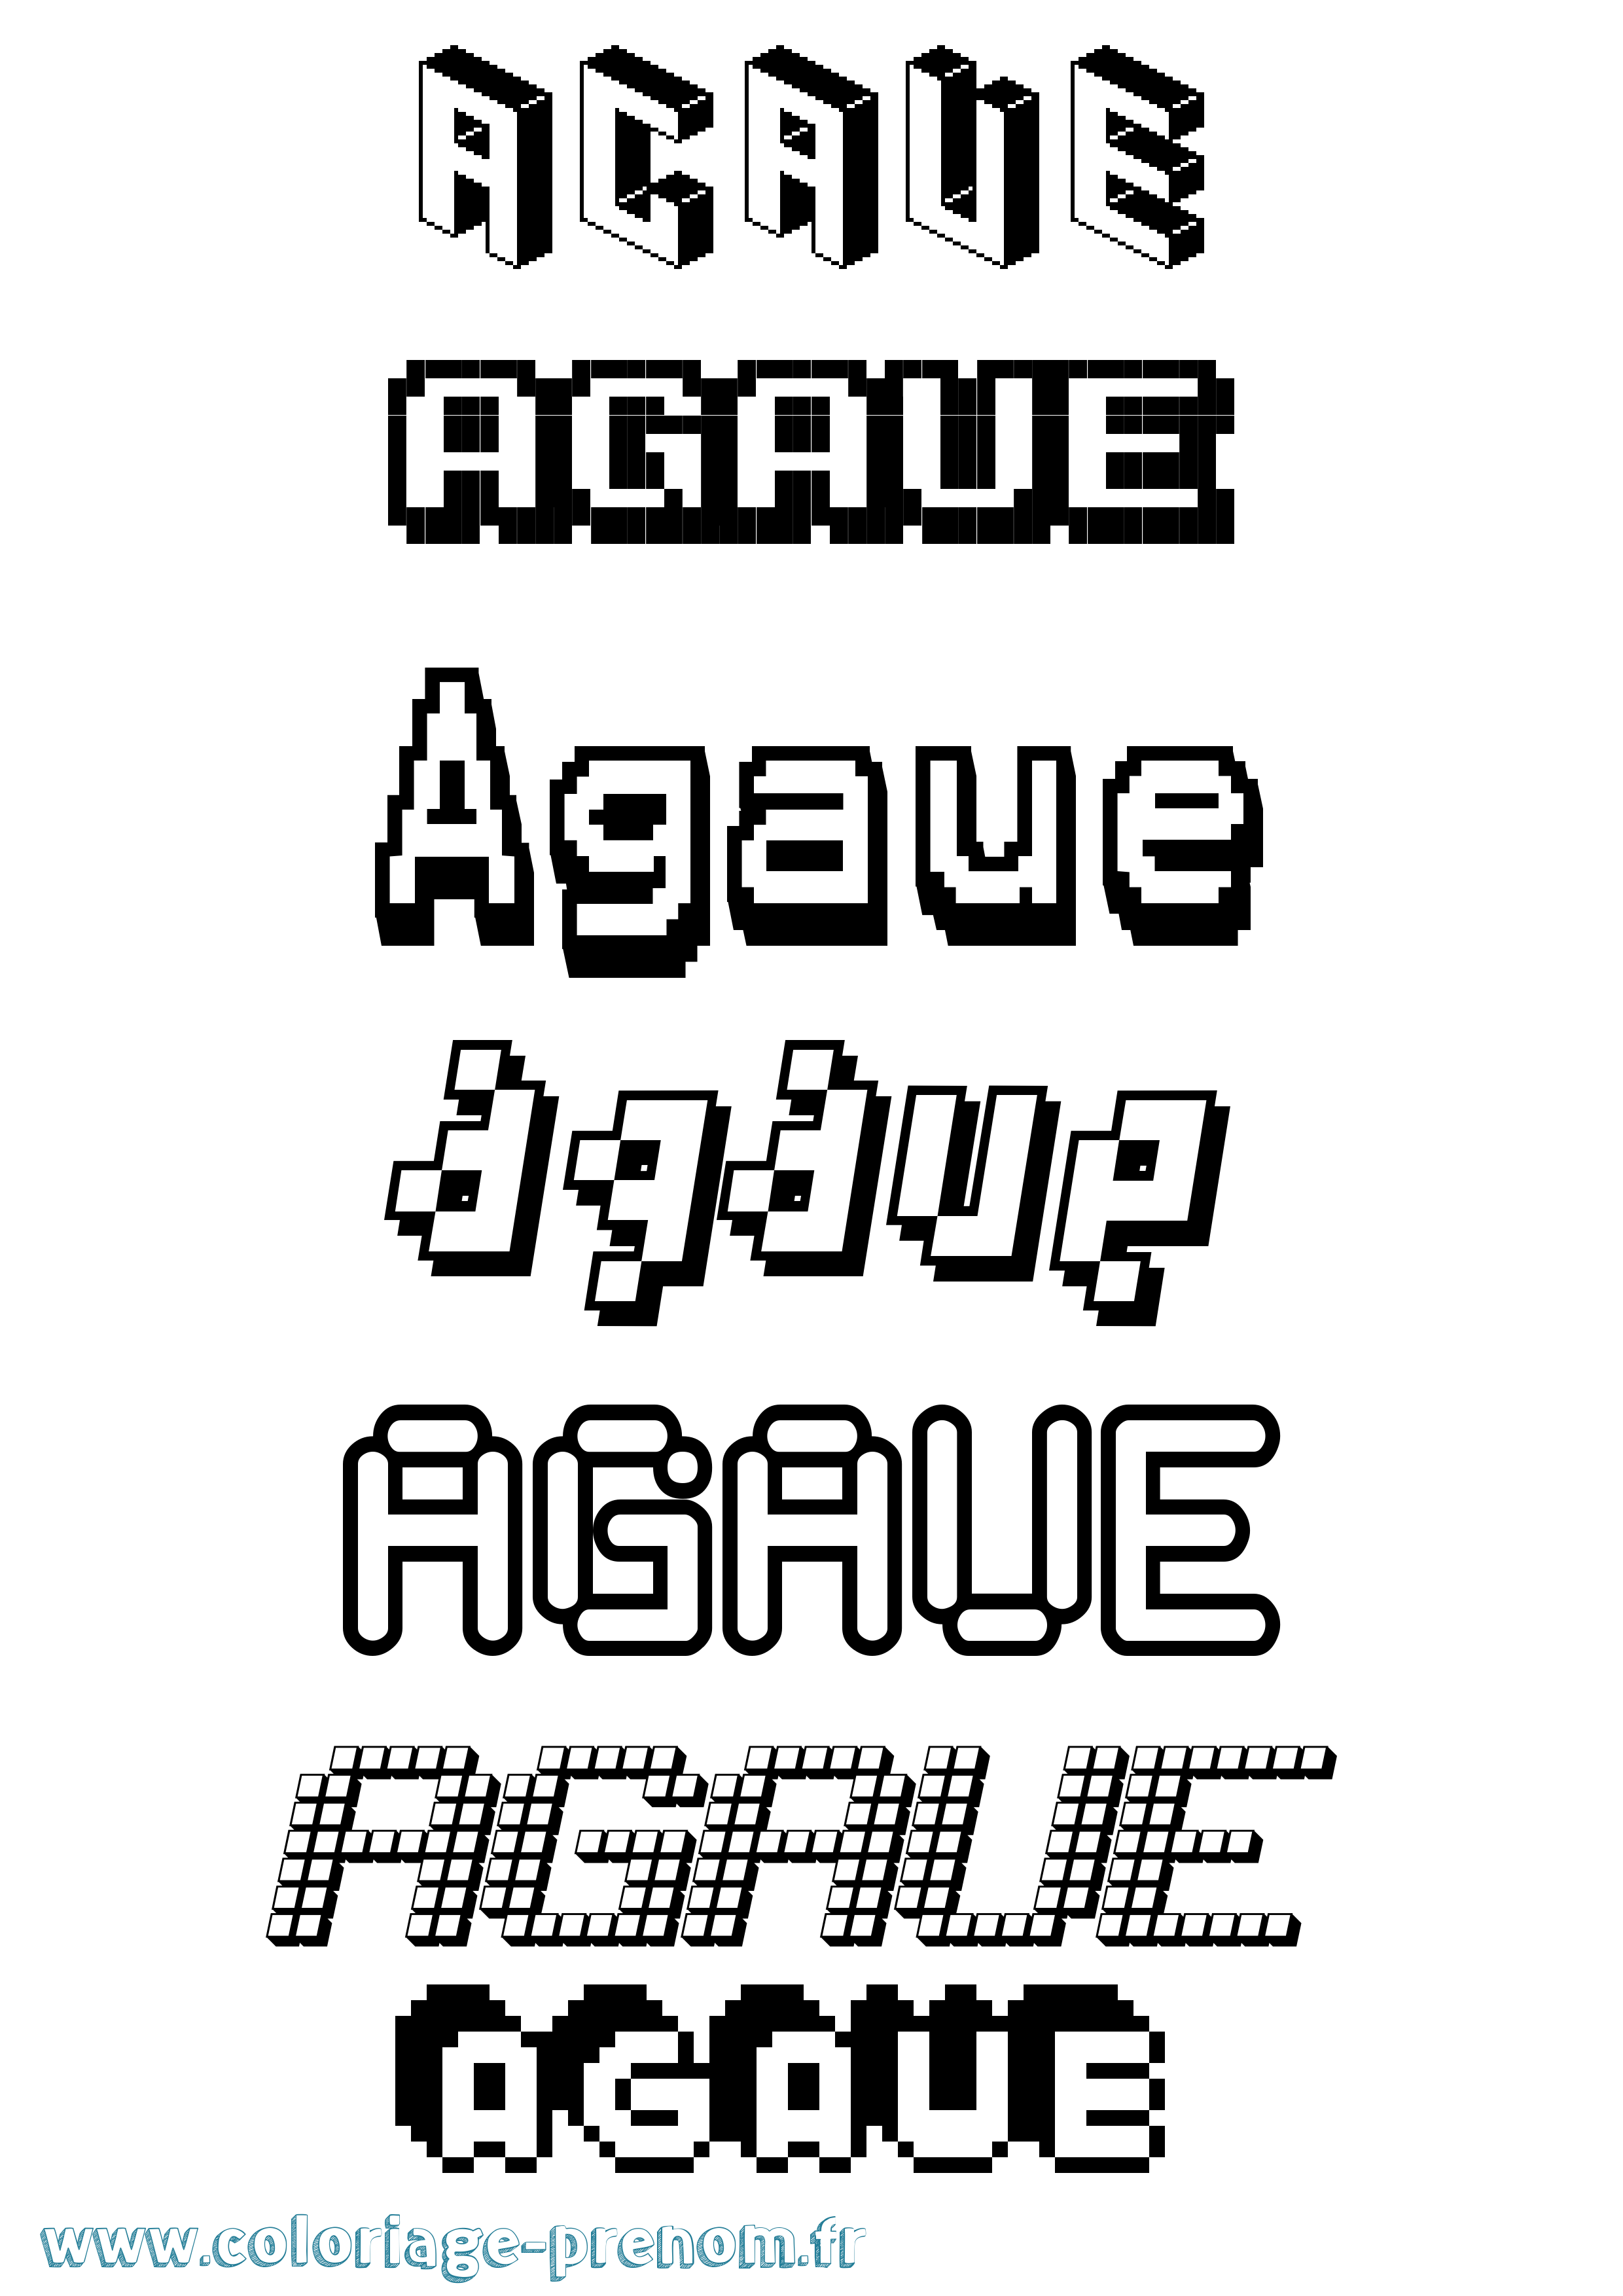 Coloriage prénom Agaue Pixel